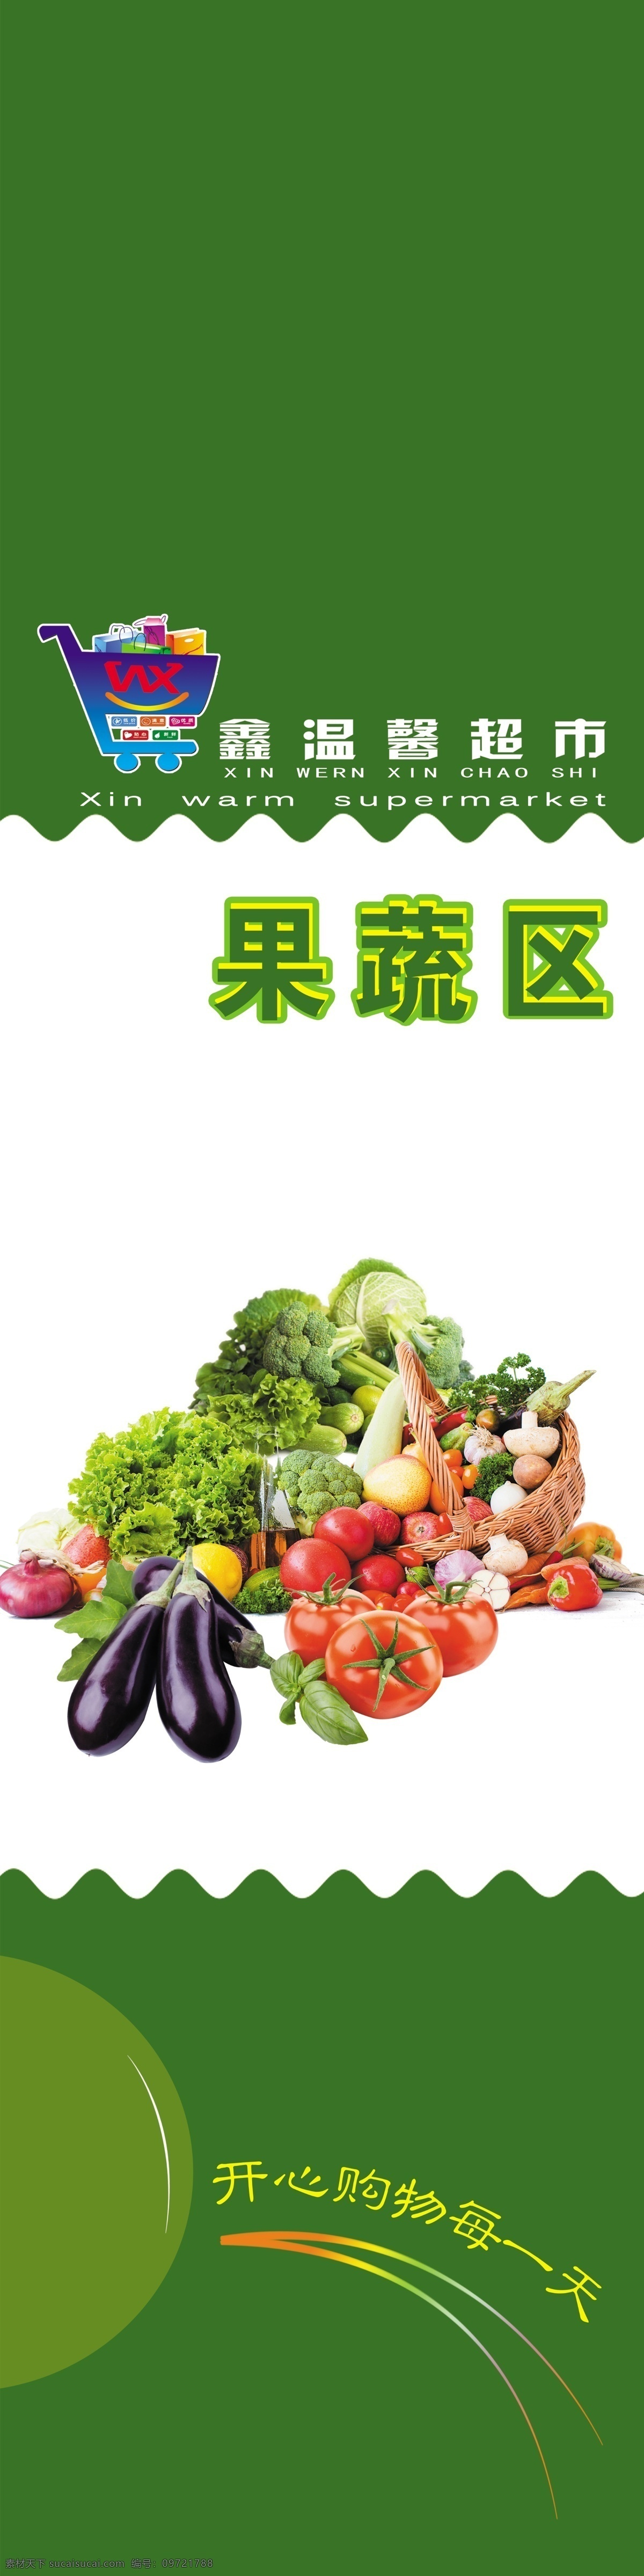 超市果蔬图片 超市分区 超市展板 超市果蔬 超市包柱 包柱子 果蔬 果蔬写真 果蔬展板